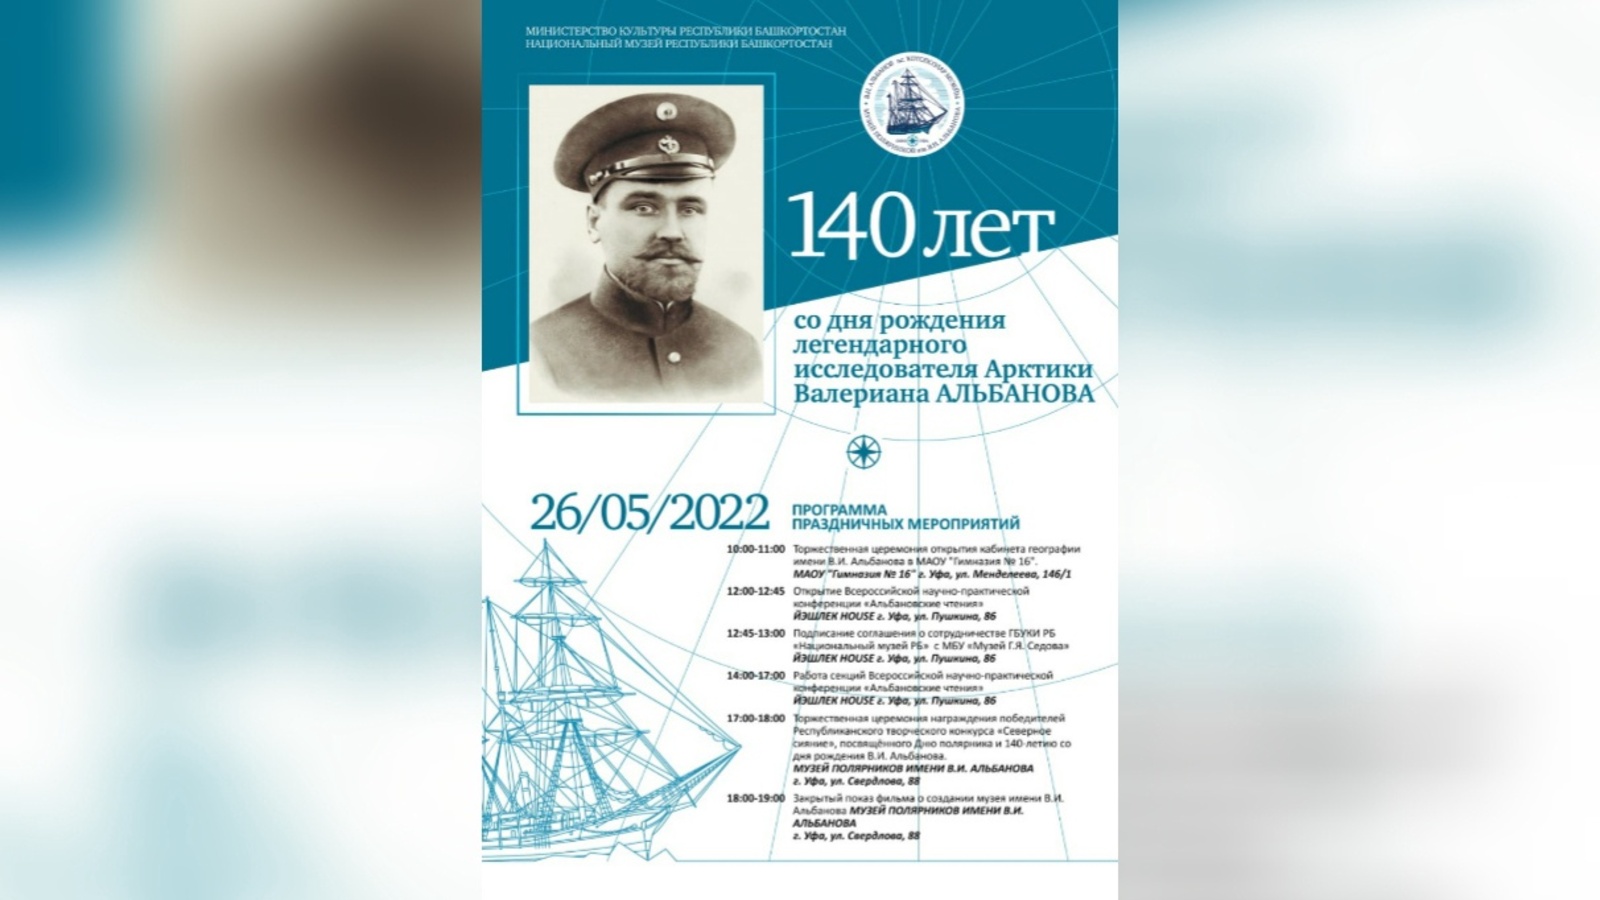 В Уфе объявлена программа мероприятий к 140-летию со дня рождения легендарного исследователя Арктики Валериана Альбанова